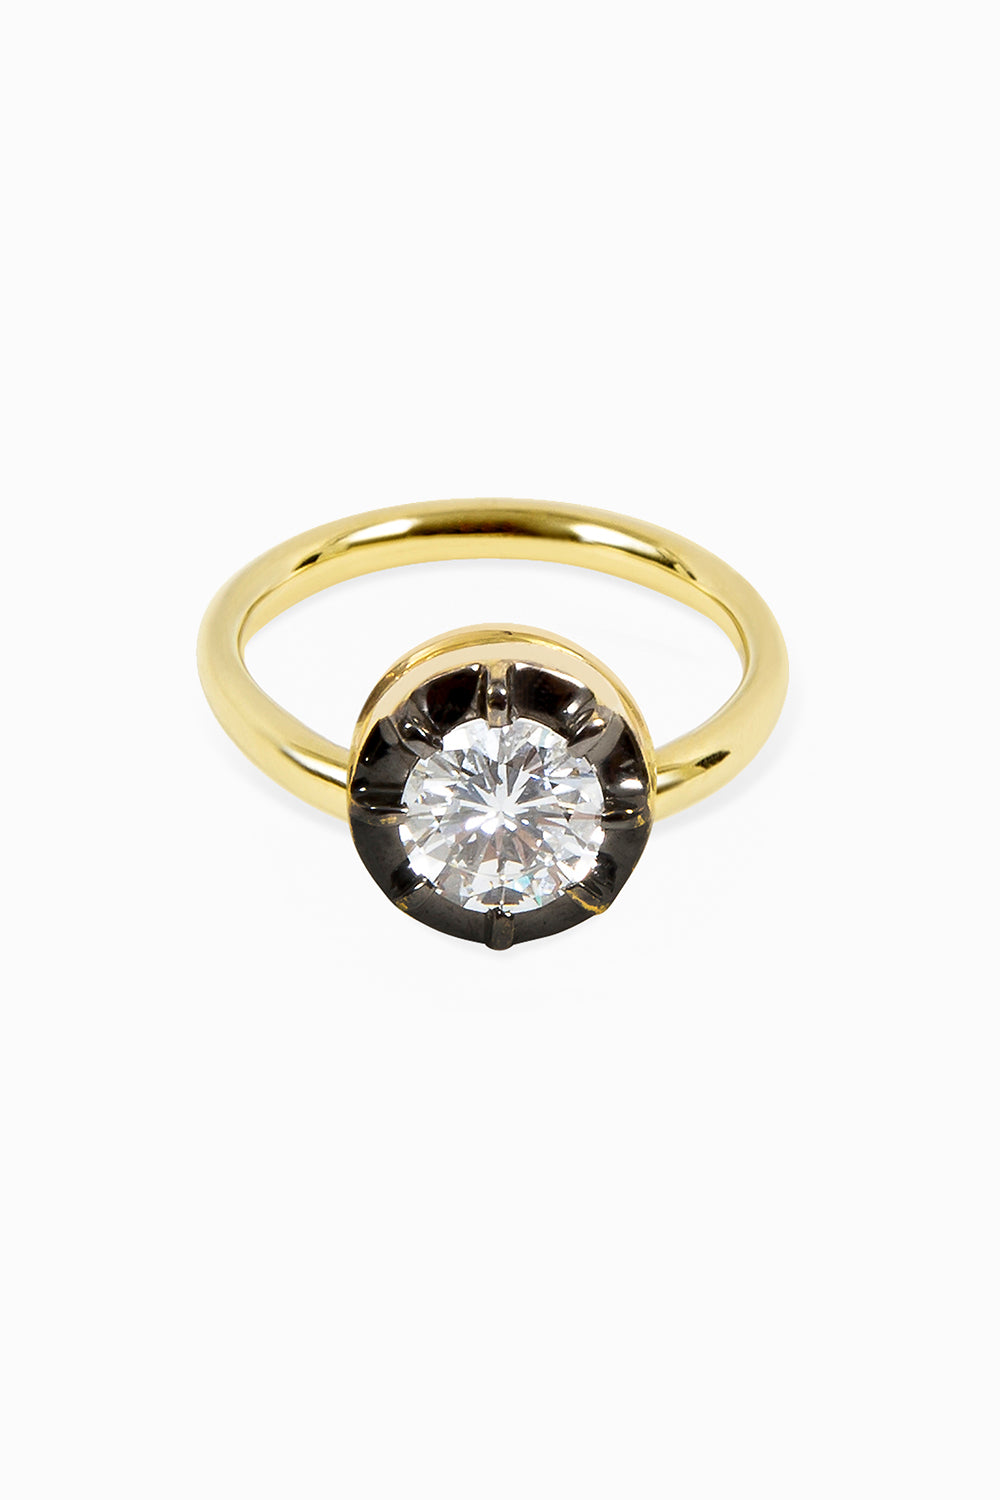 Black rhodium solitaire ring